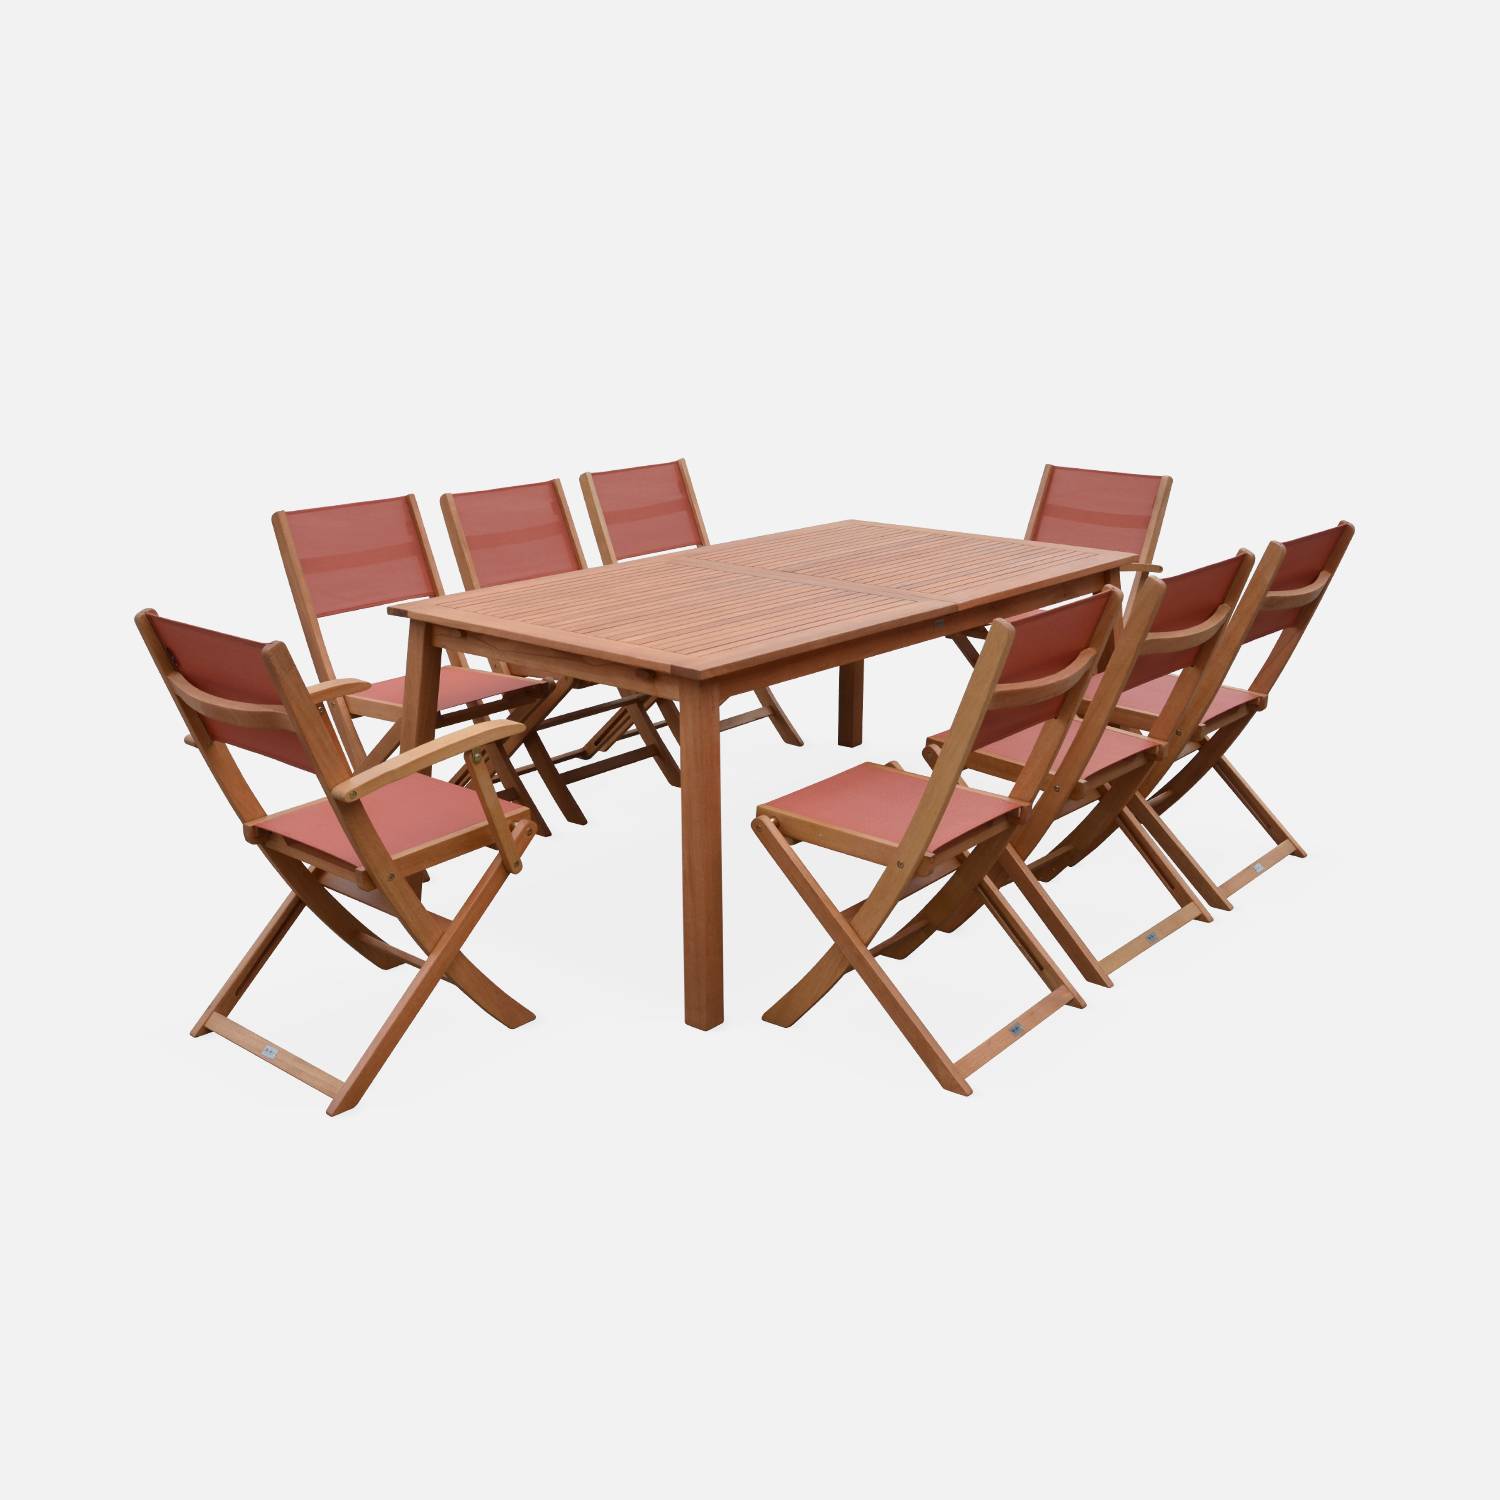 Ausziehbare Gartenmöbel aus Holz - Almeria - Tisch 180/240 cm mit Verlängerung, 2 Sesseln und 6 Stühlen aus geöltem FSC-Eukalyptusholz und terrakottafarbenem Textilene Photo4